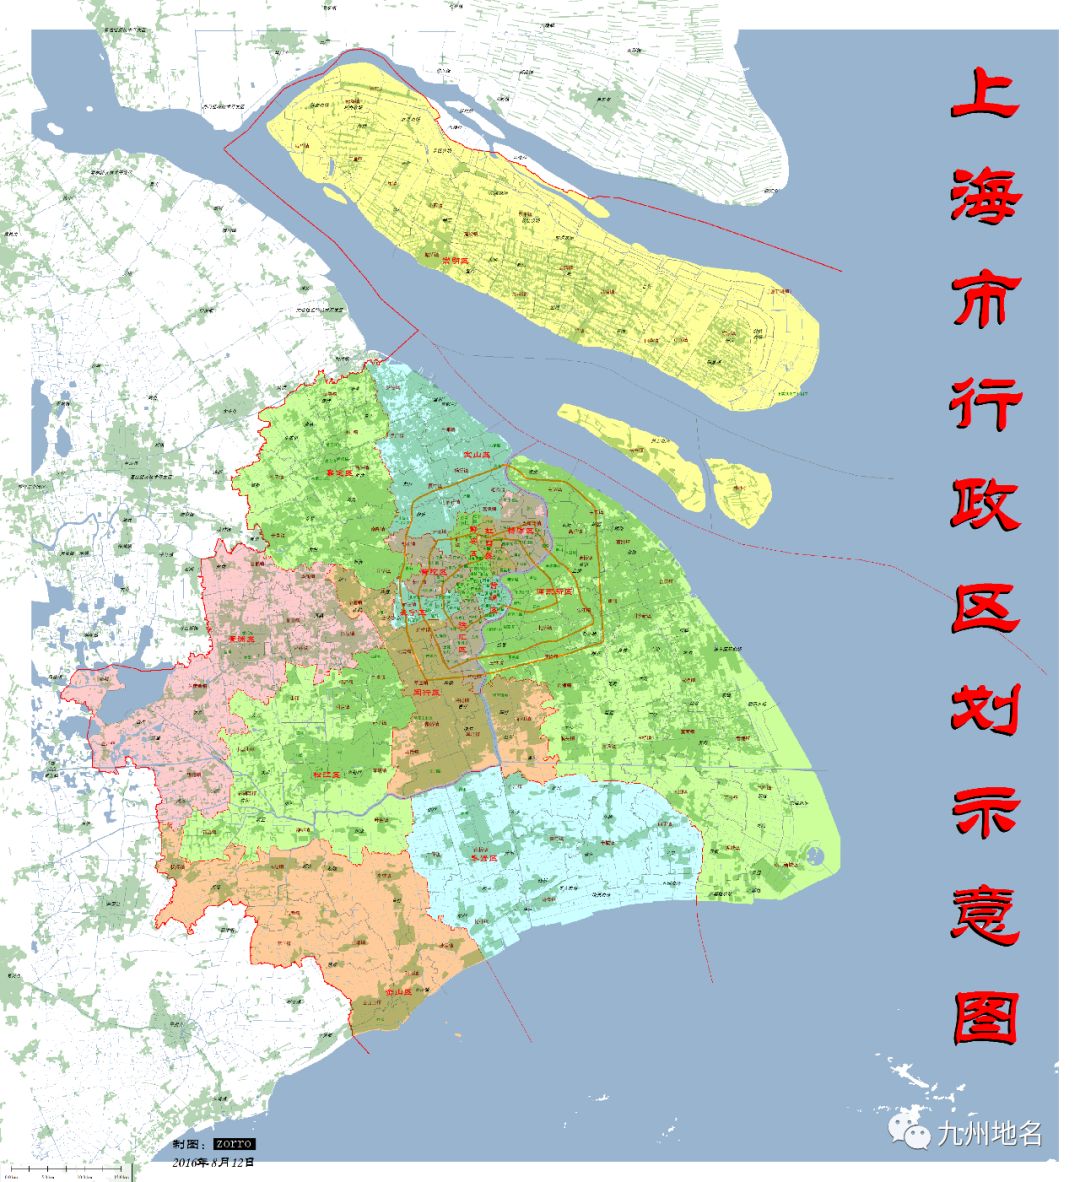 资讯| 上海市16区有哪些乡镇街道?来看最新行政区划表